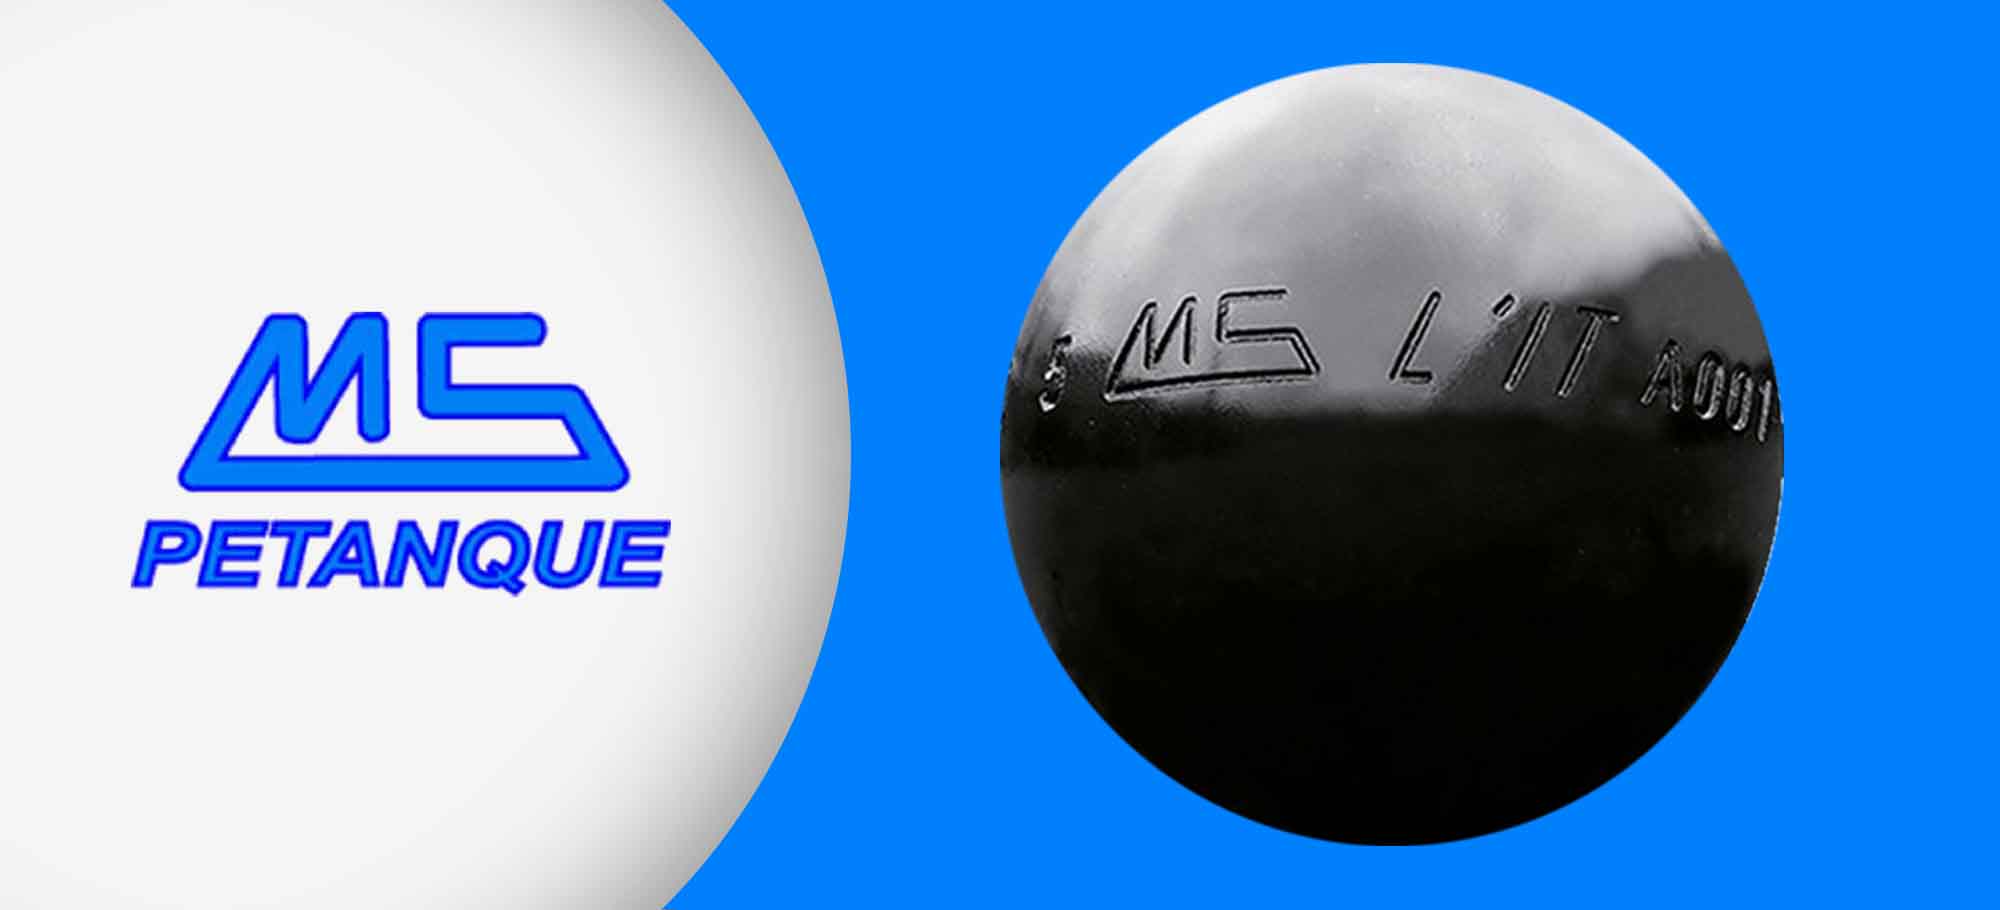 You are currently viewing La MS L’IT: une boule haut de gamme